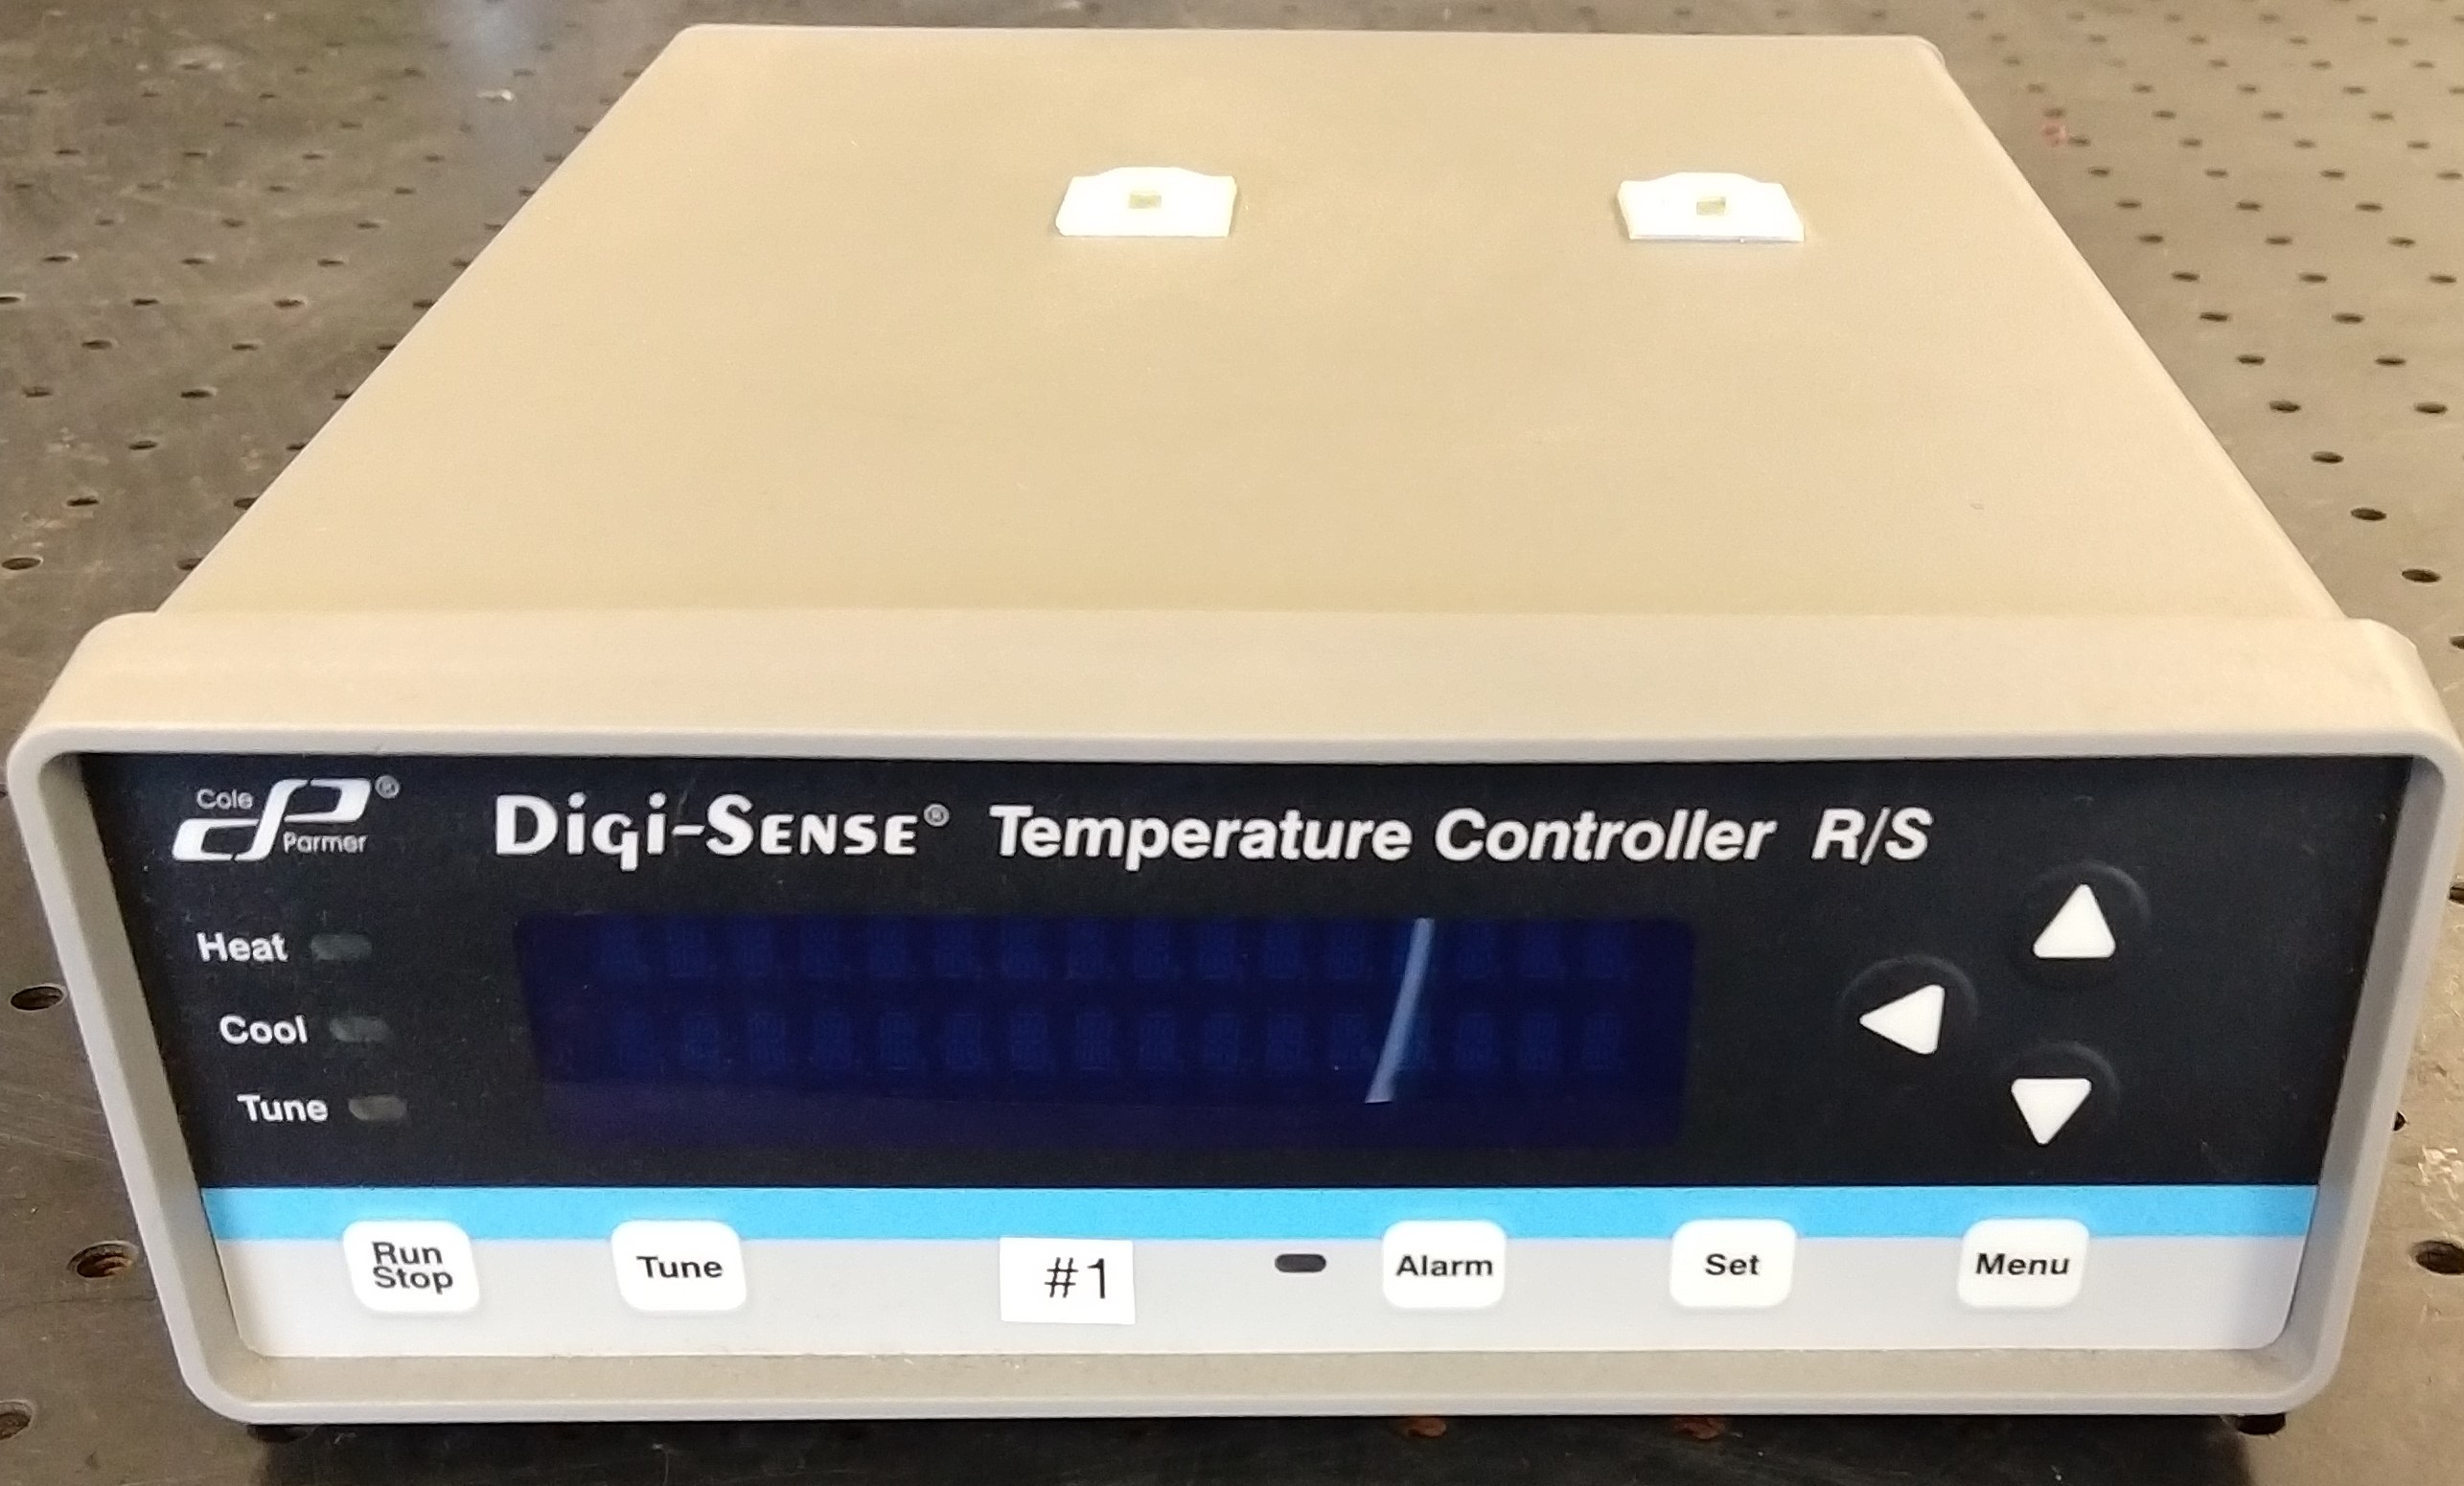 Temperature Controller R/S